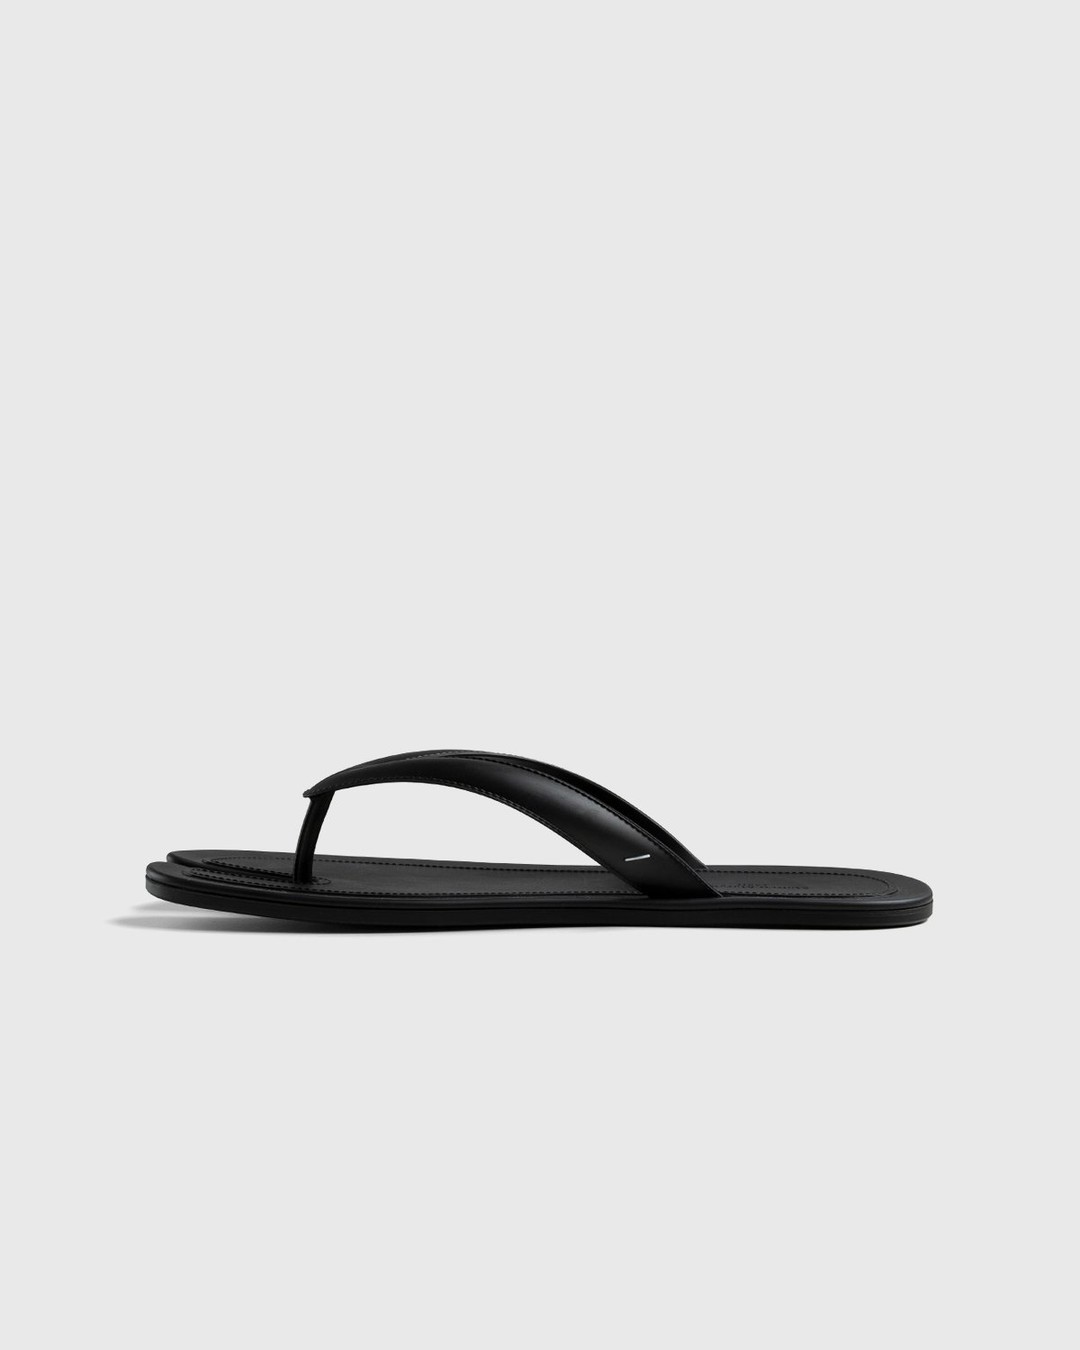 Maison Margiela – Tabi Flip-Flops Black - Sandals & Slides - Black - Image 3